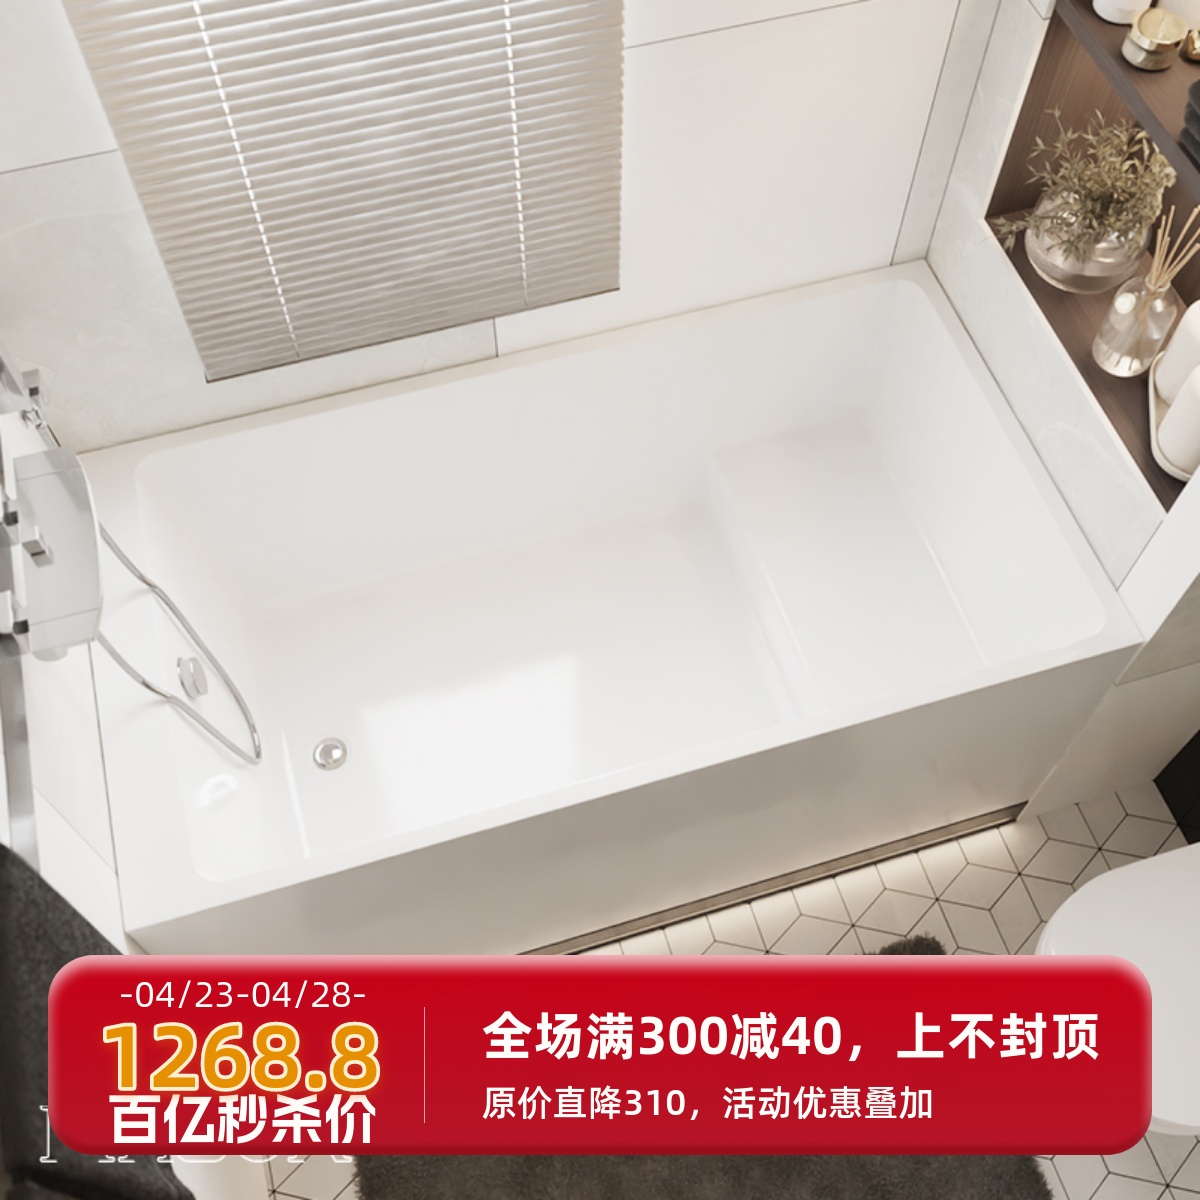 魅生卫浴亚克力迷你日式浴缸 坐泡式简约家用小户型浴盆0.95m-1.7